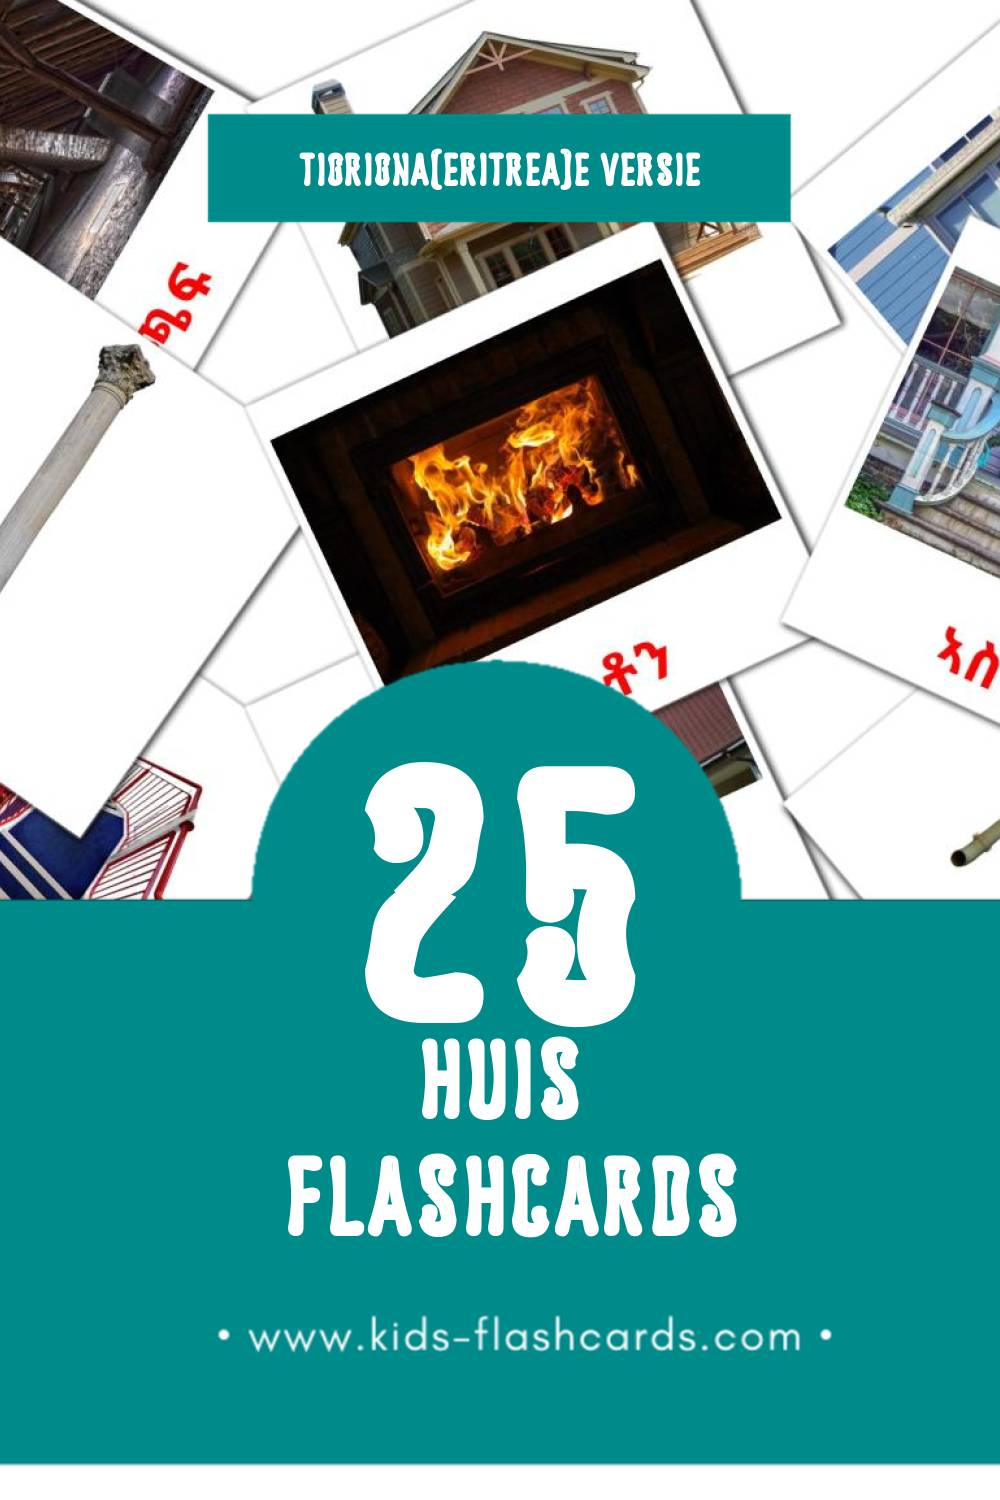 Visuele ገዛ Flashcards voor Kleuters (25 kaarten in het Tigrigna(eritrea))